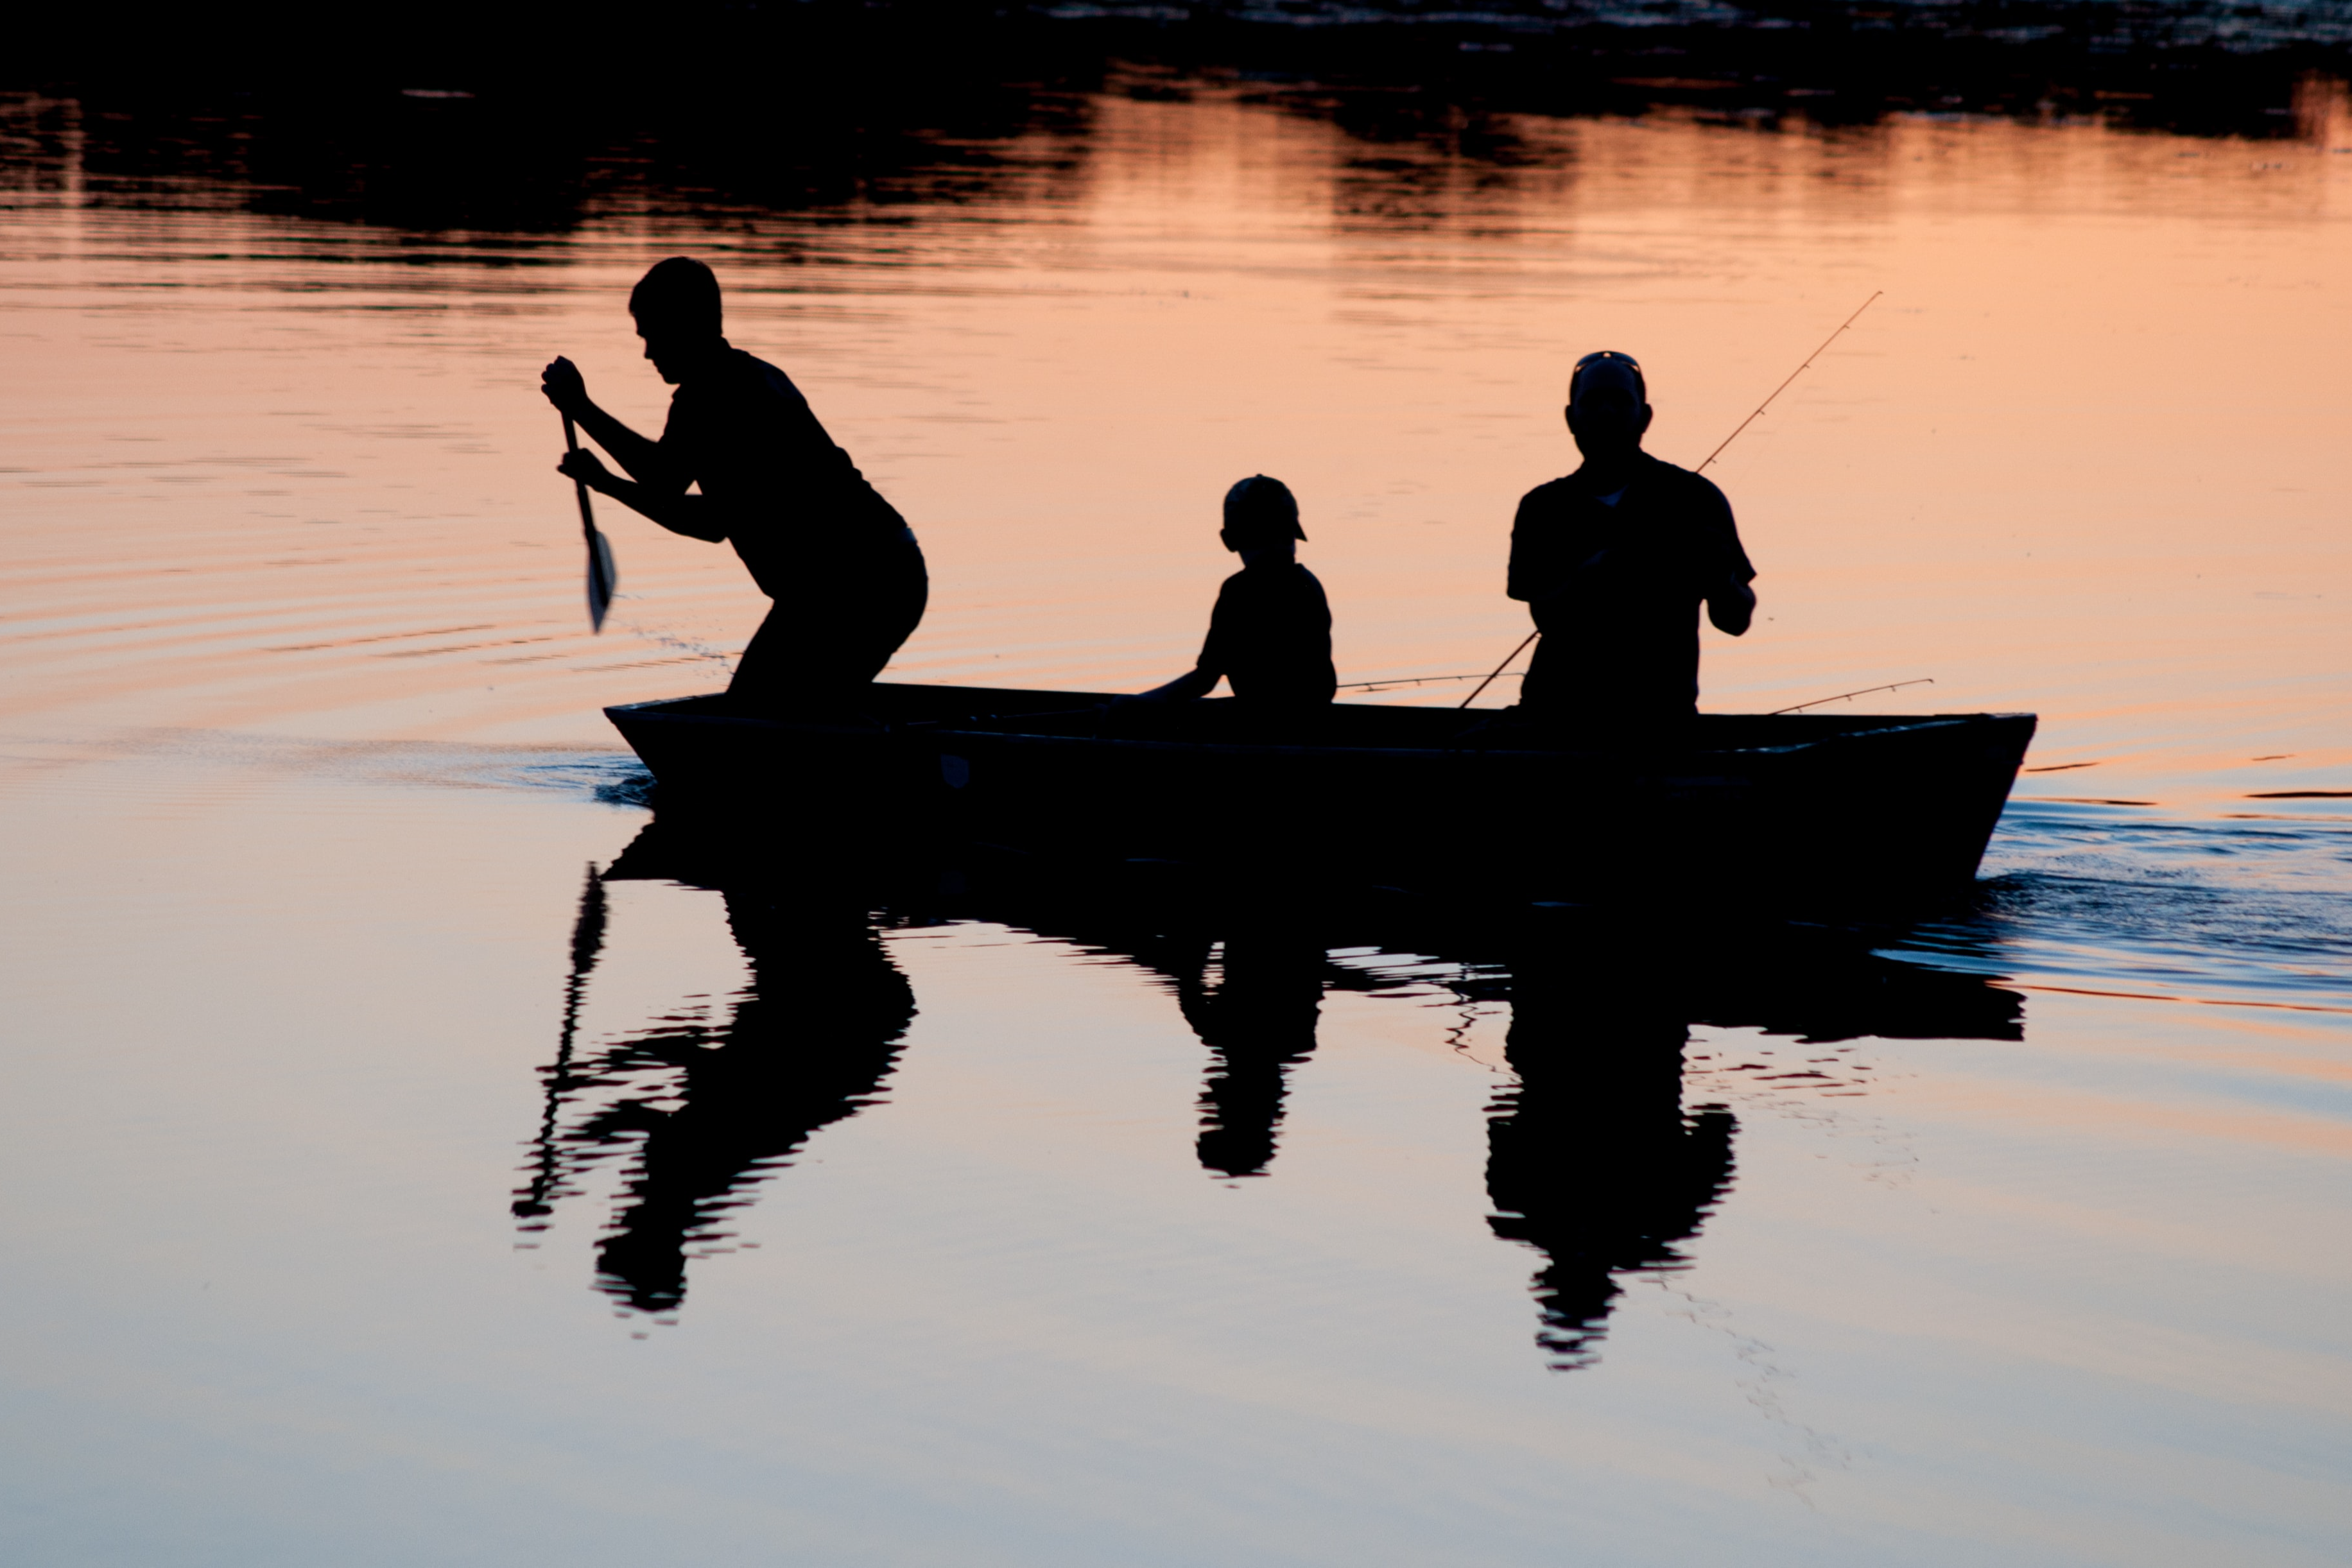 family fishing on lake at sunset